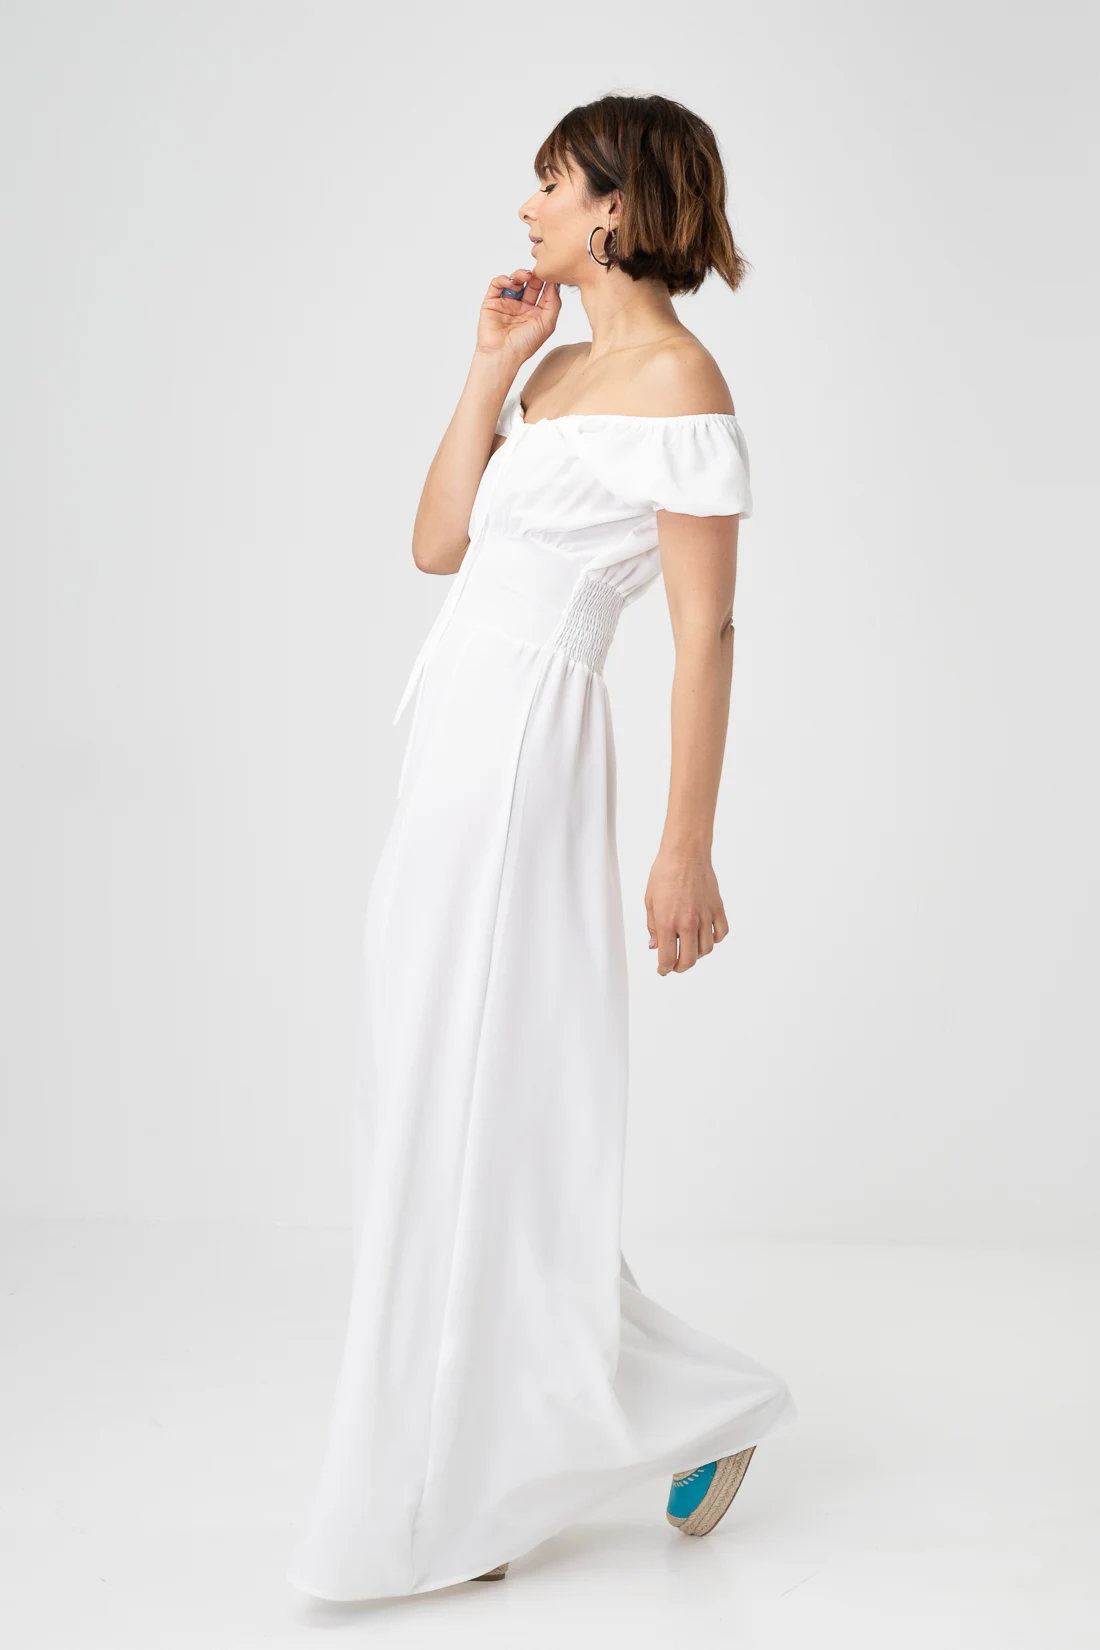 DILNES DRESS - WHITE